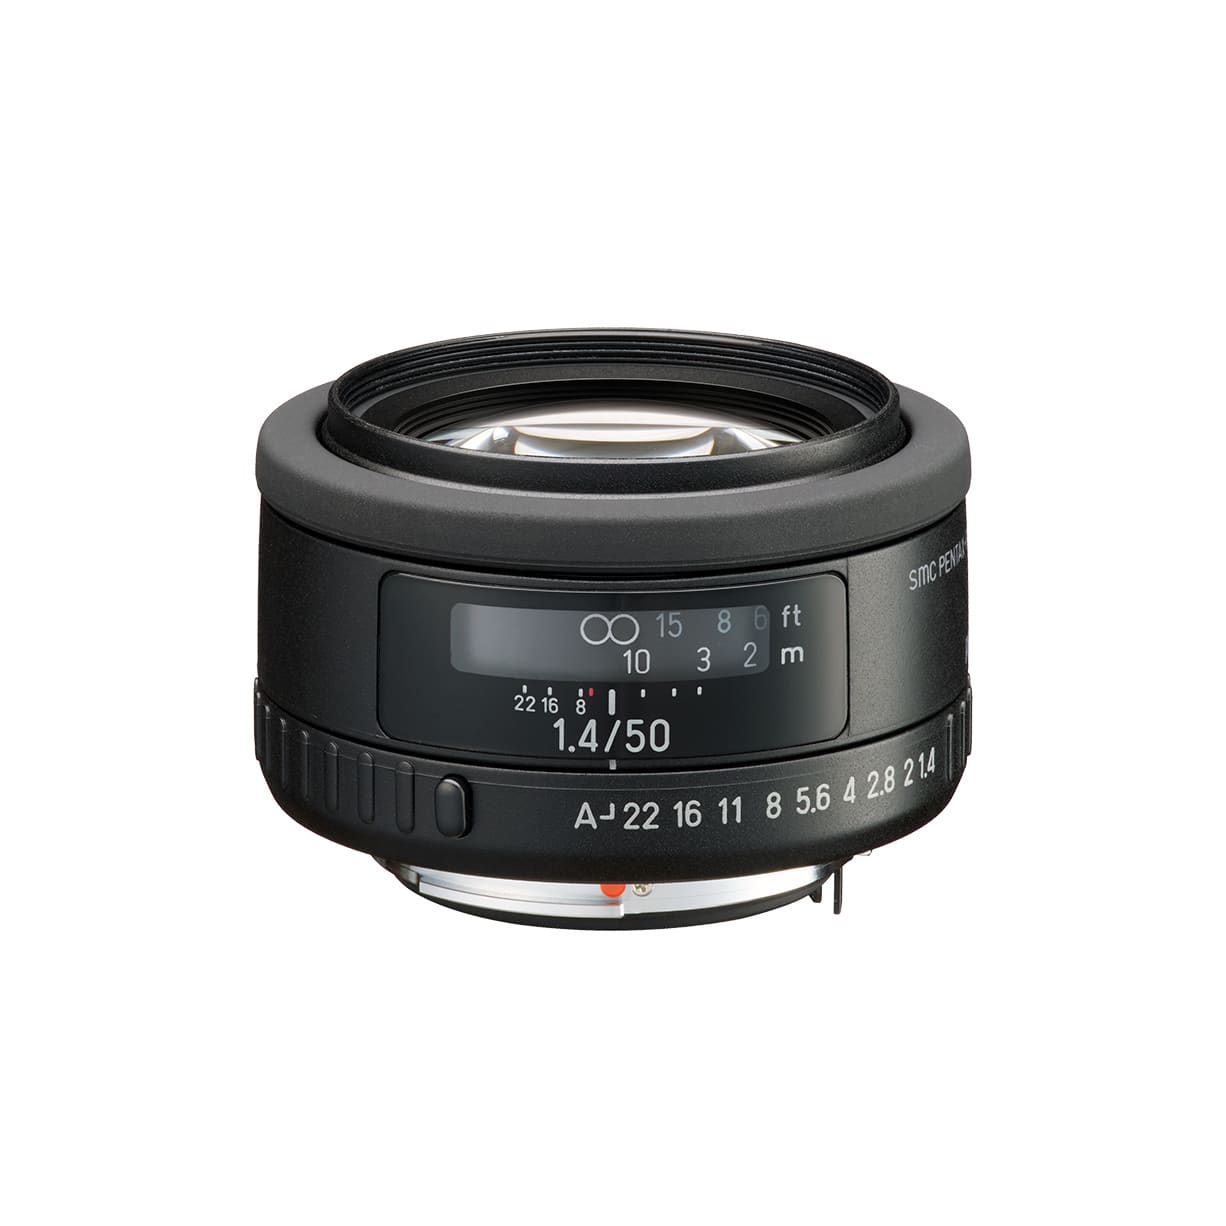 PENTAX FA50mm F1.4 レンズフード付き - レンズ(単焦点)